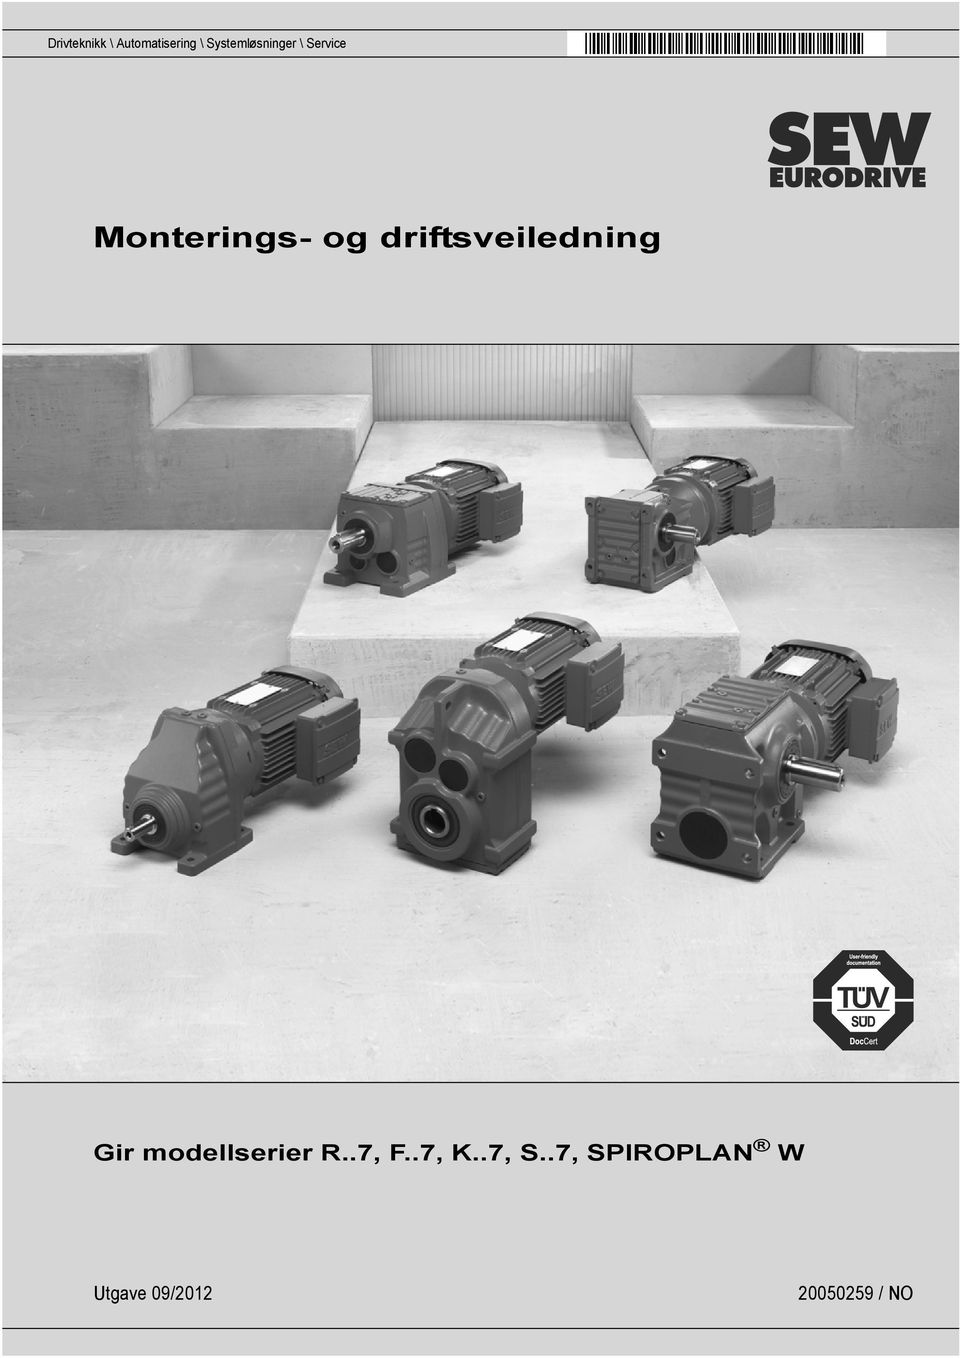 driftsveiledning Gir modellserier R..7, F.